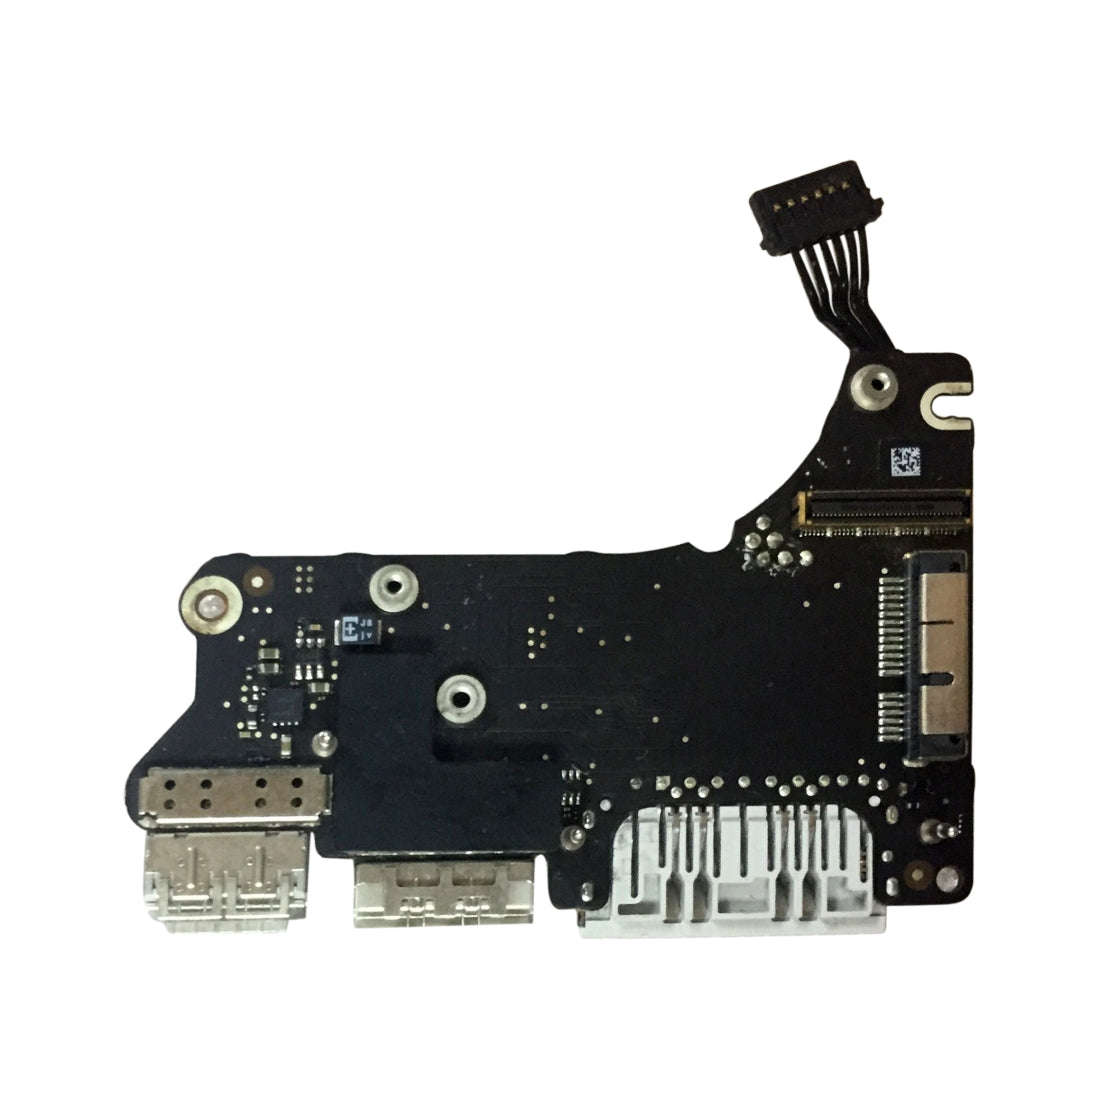 USB Power Board Apple MacBook Pro Retina 13.3 A1425 MD212 MD213